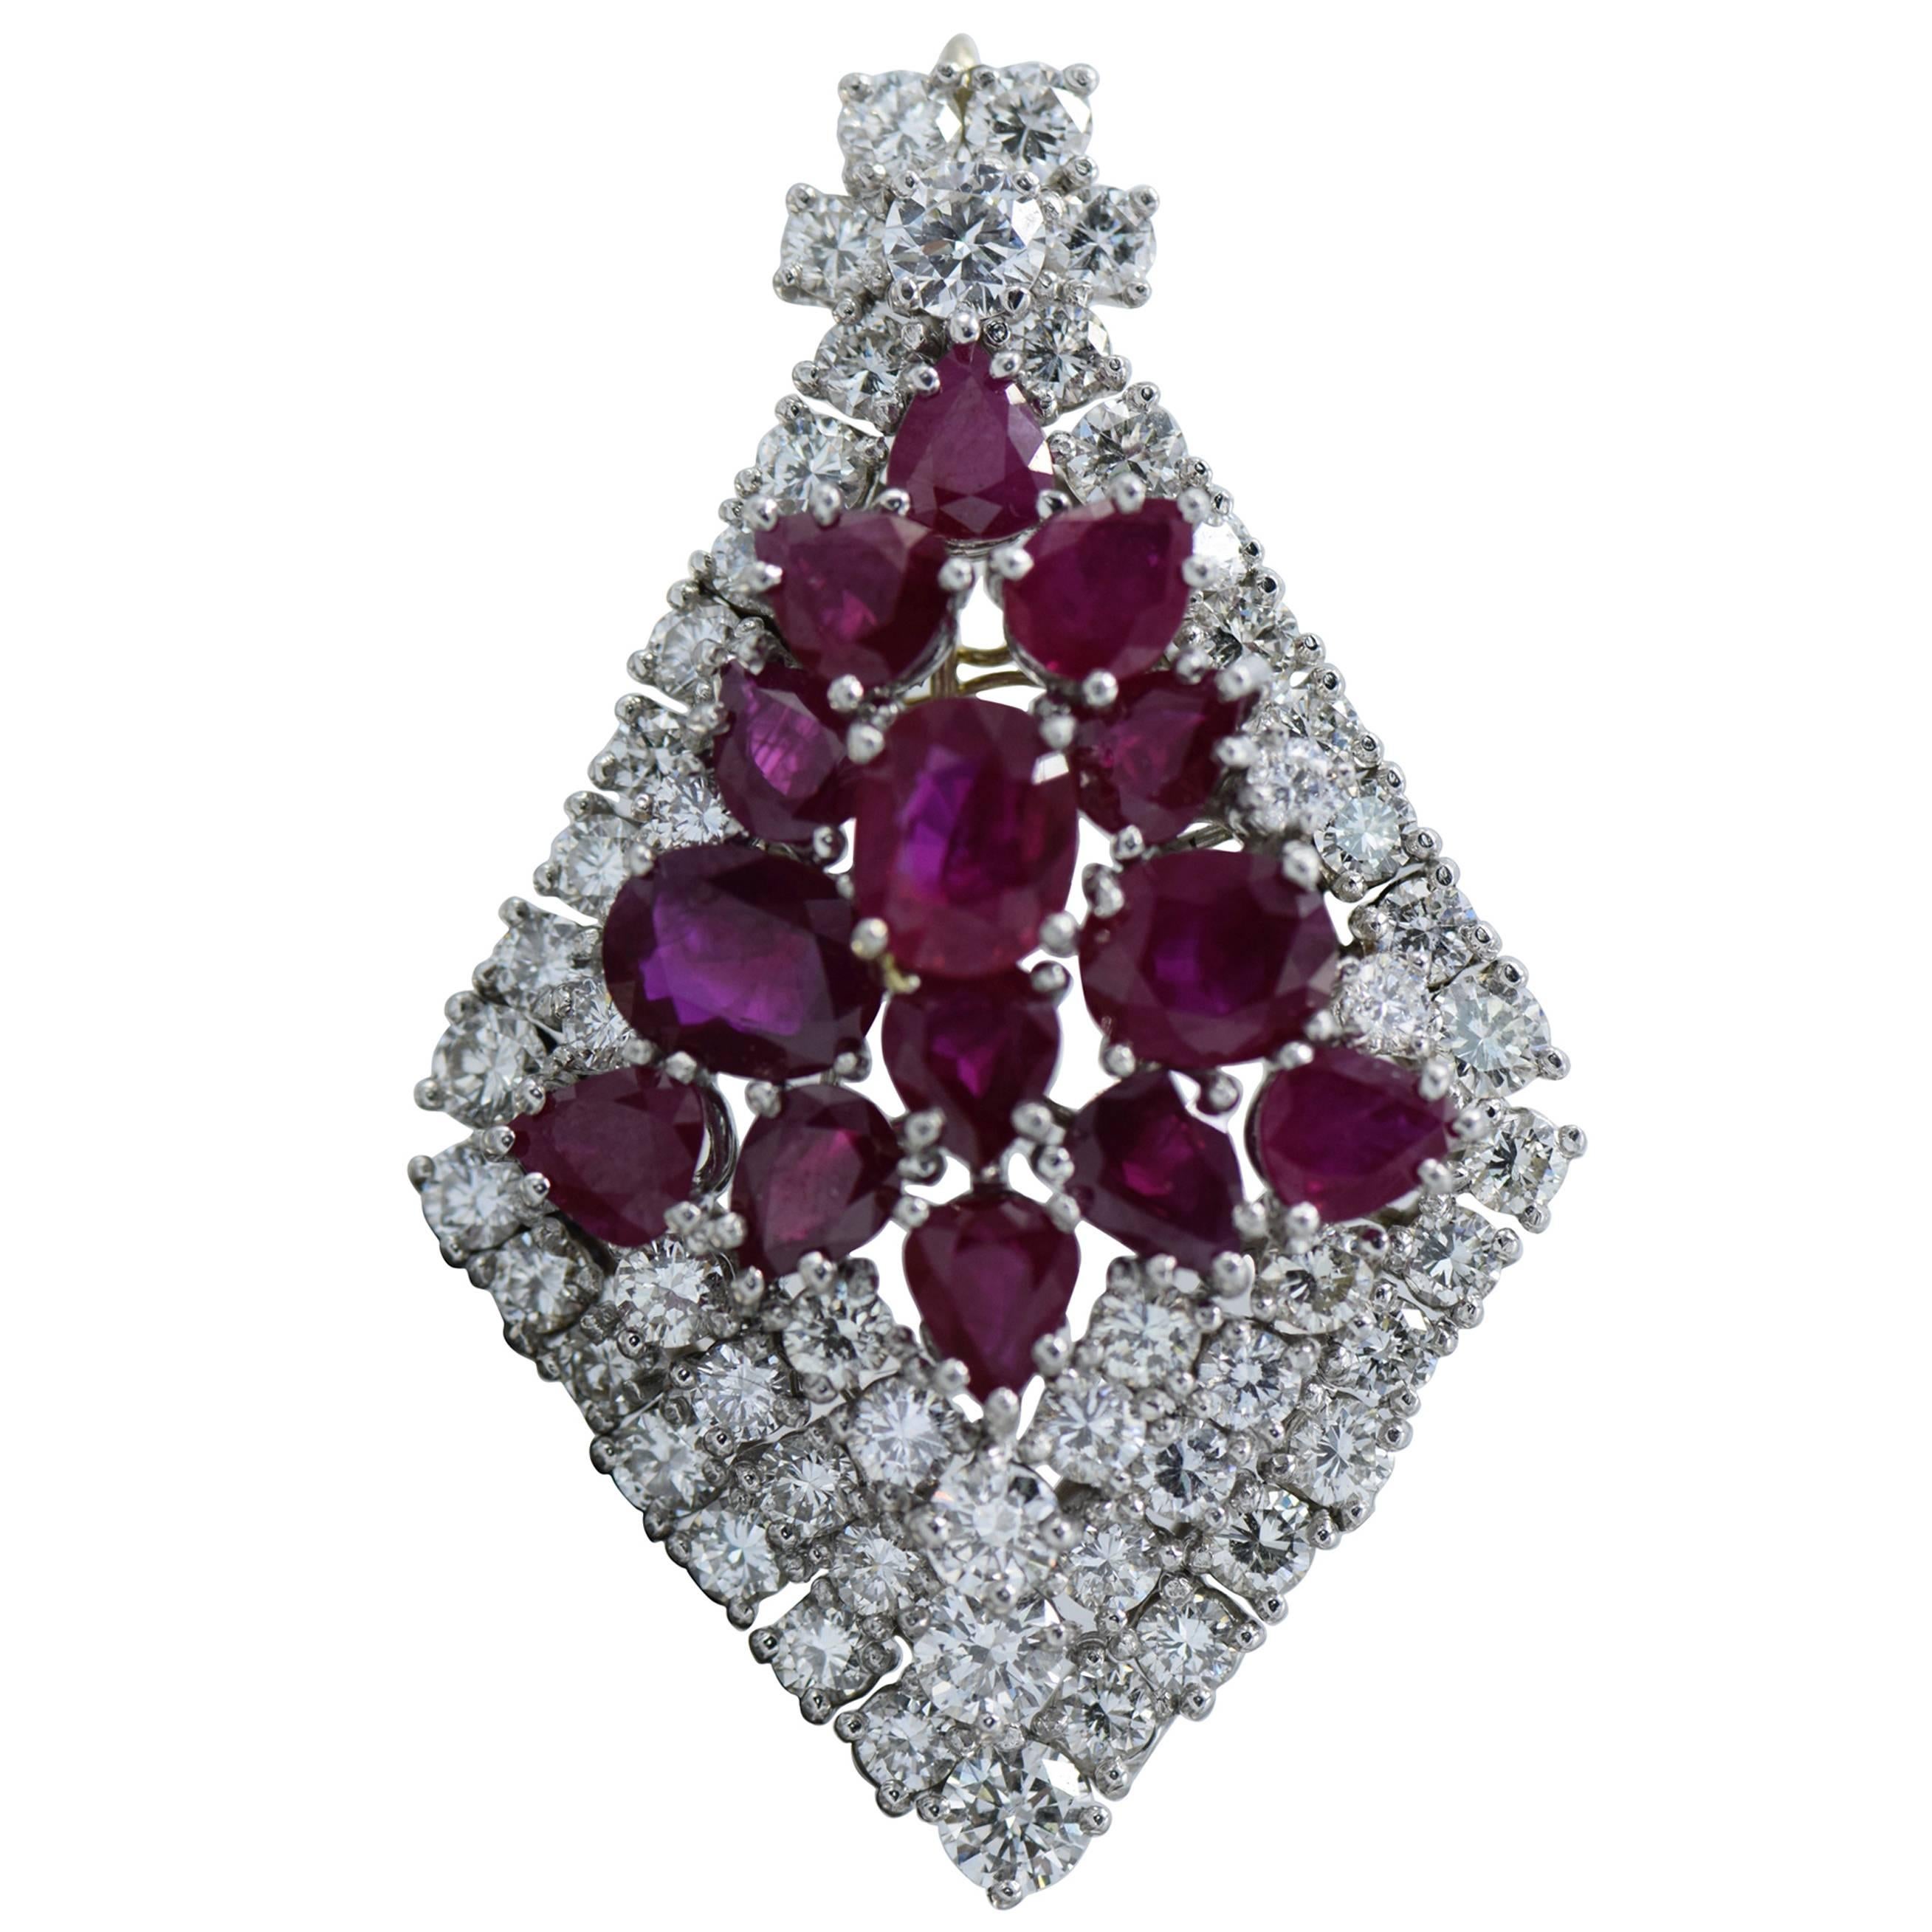 15 Oval Ruby Diamond Pendant 5-6 Carat For Sale